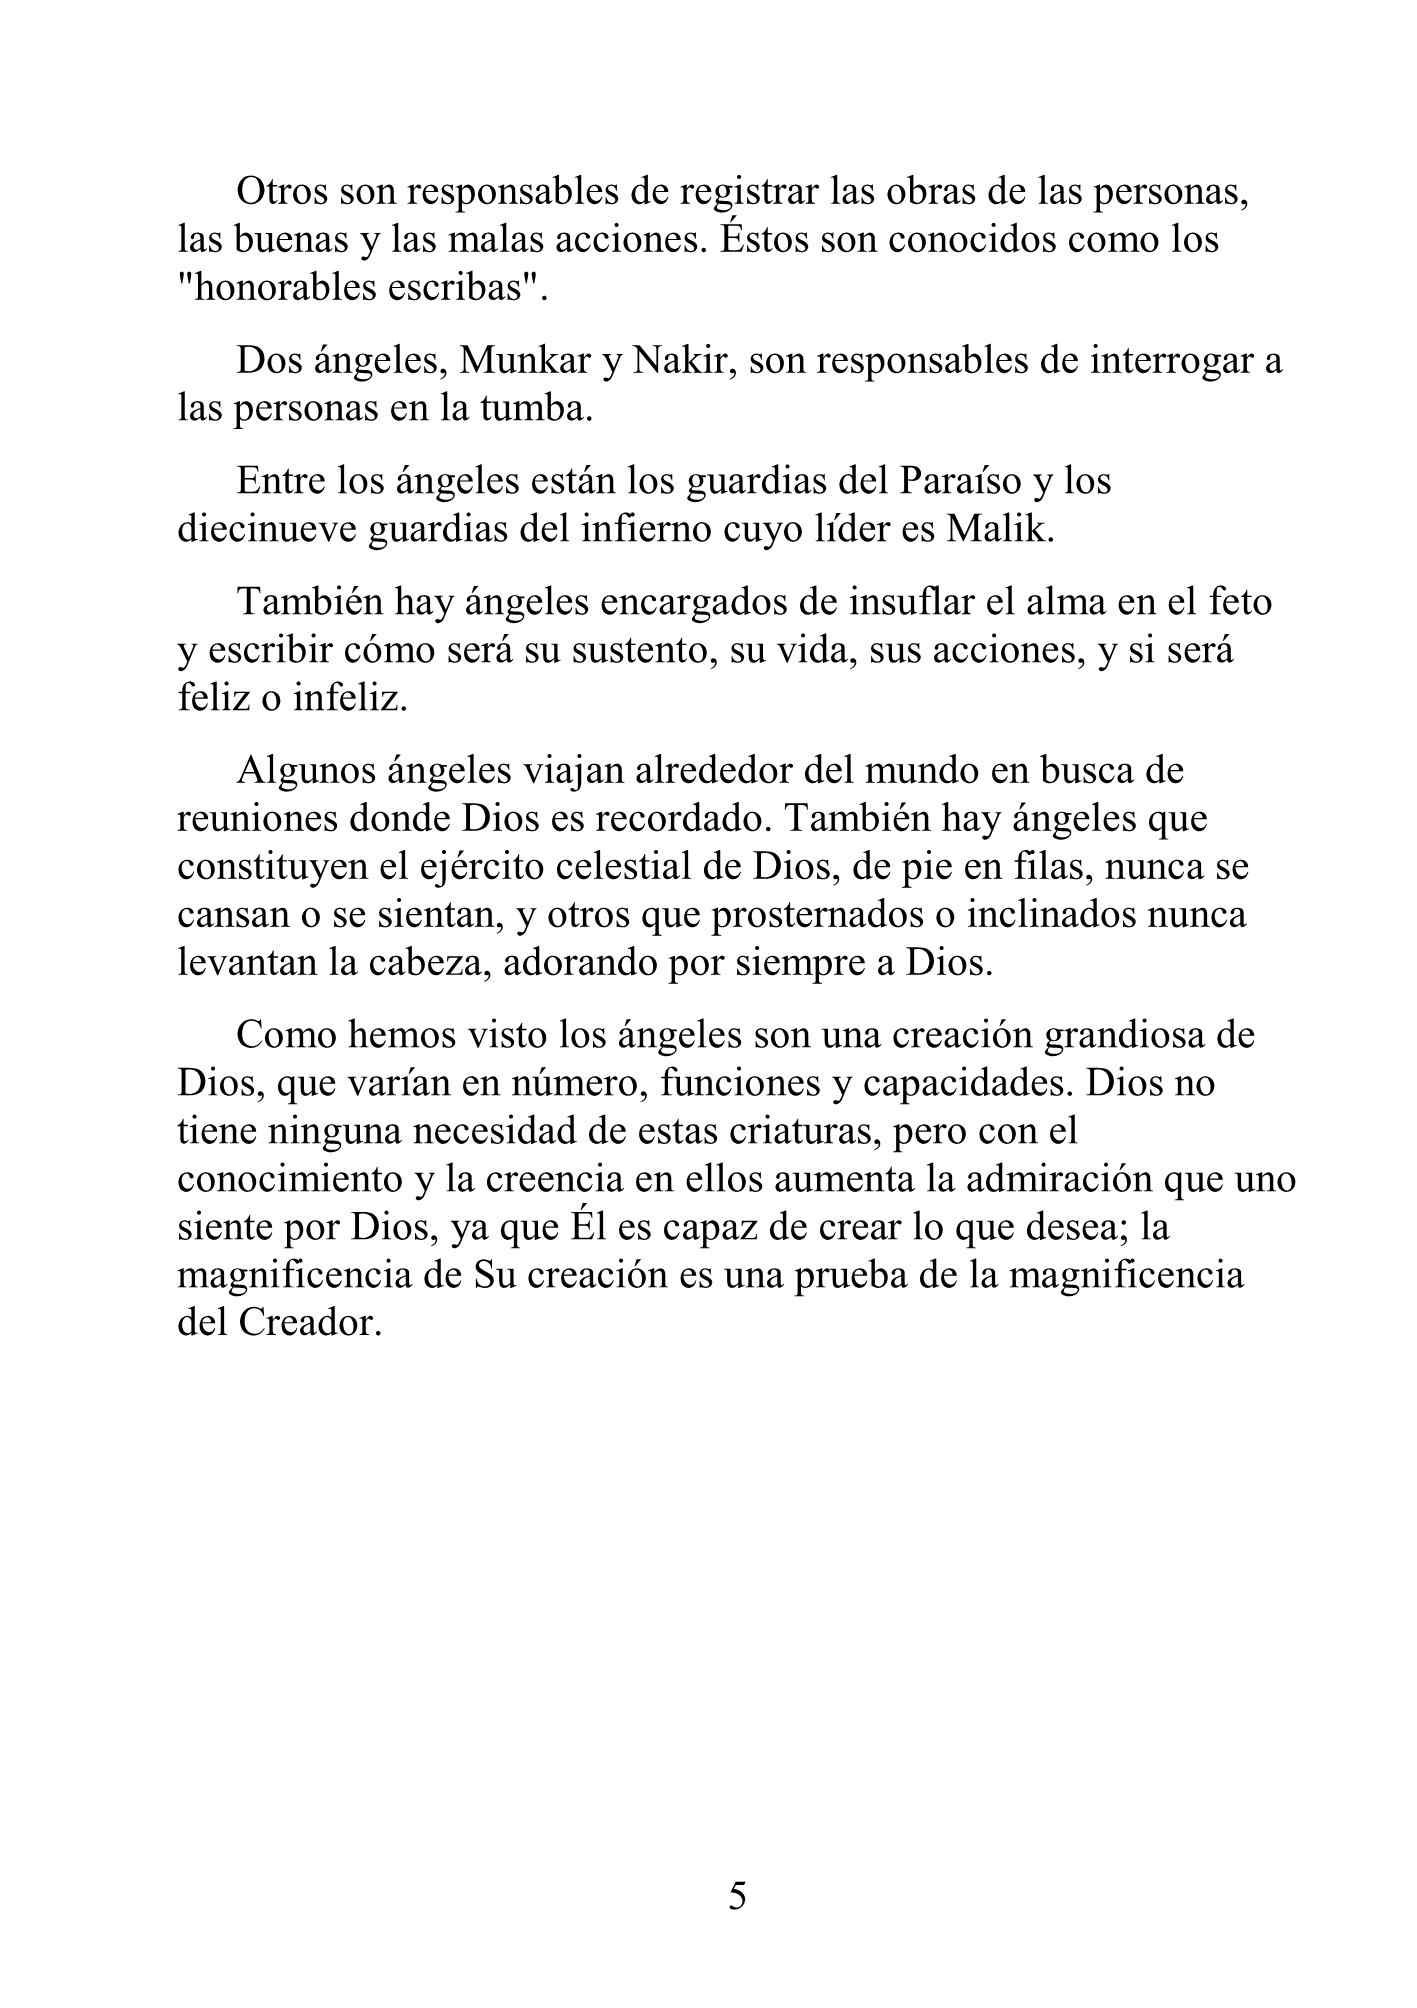 إسباني - الإيمان بالملائكة - La Creencia en los Ángeles.pdf, 5-Sayfa 